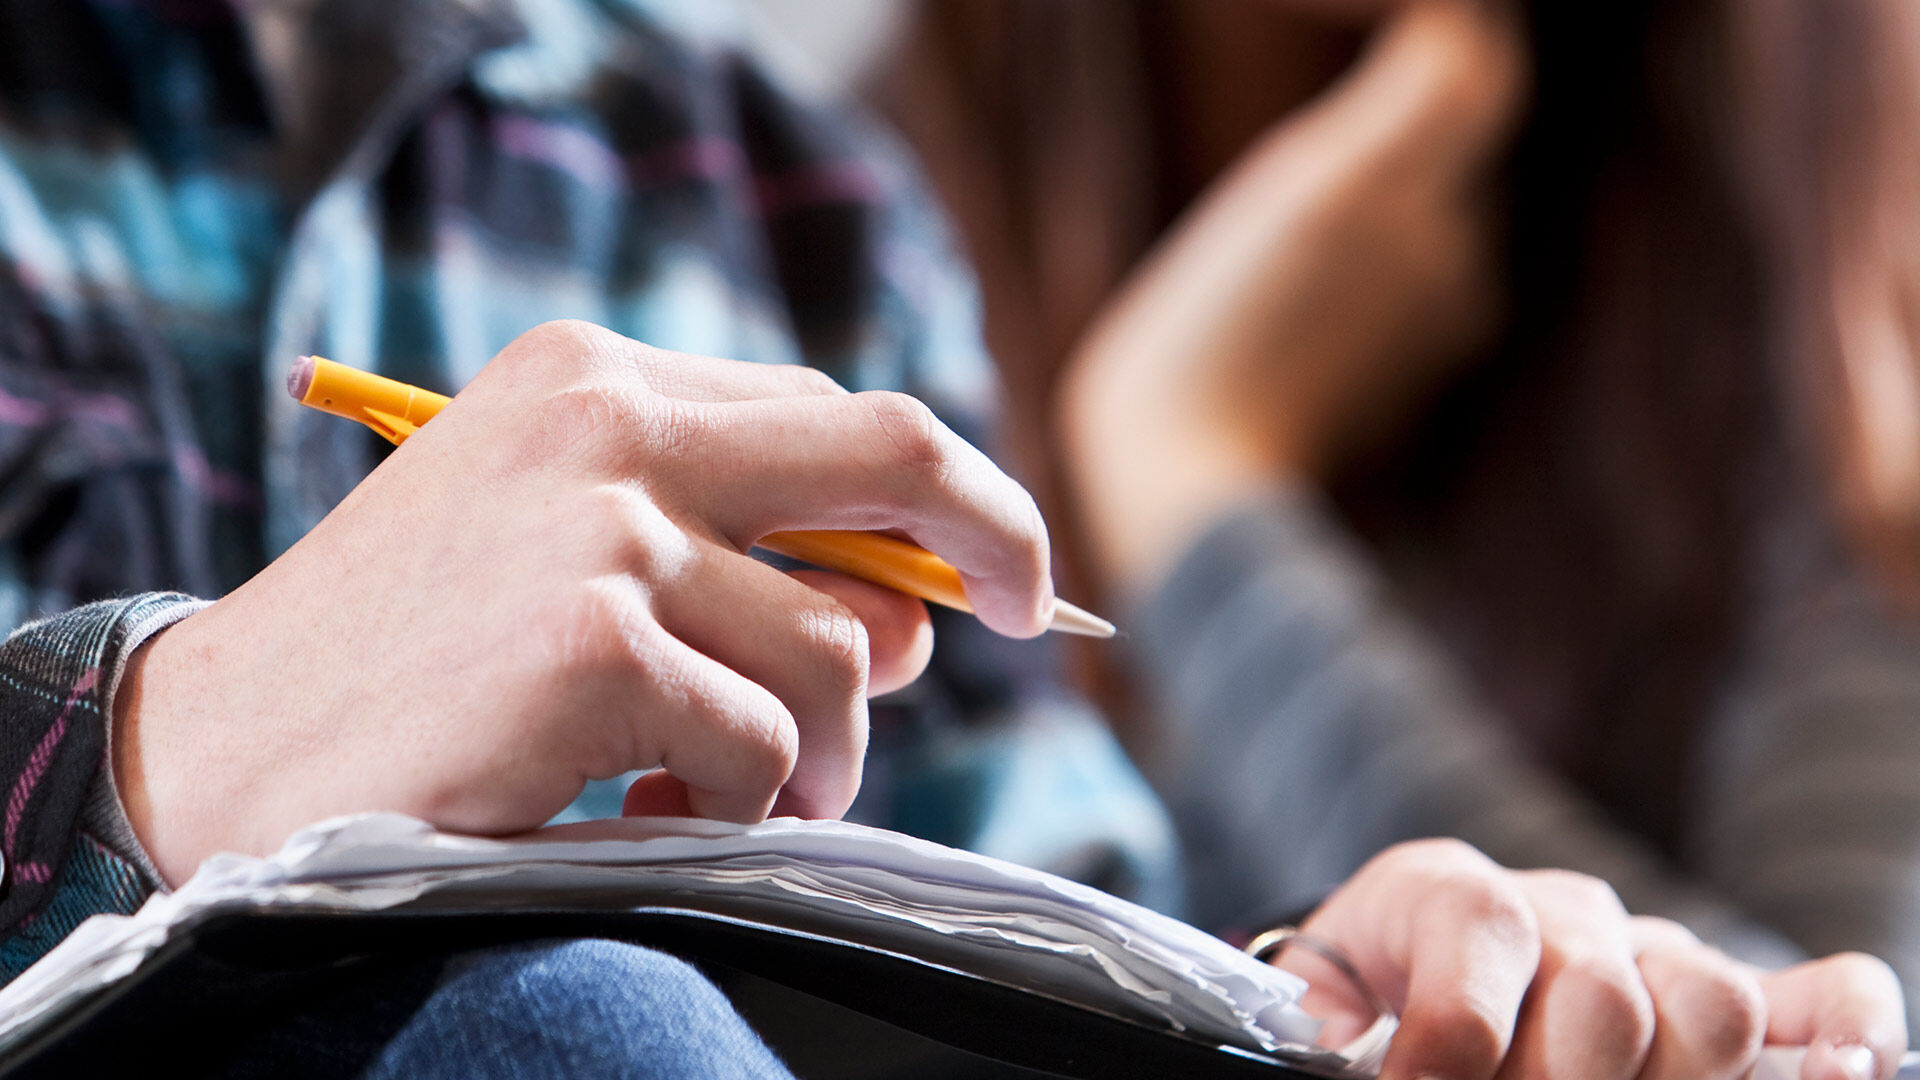 Gros plan sur la main d'un étudiant écrivant des notes avec un crayon jaune dans un cahier pendant un cours magistral.